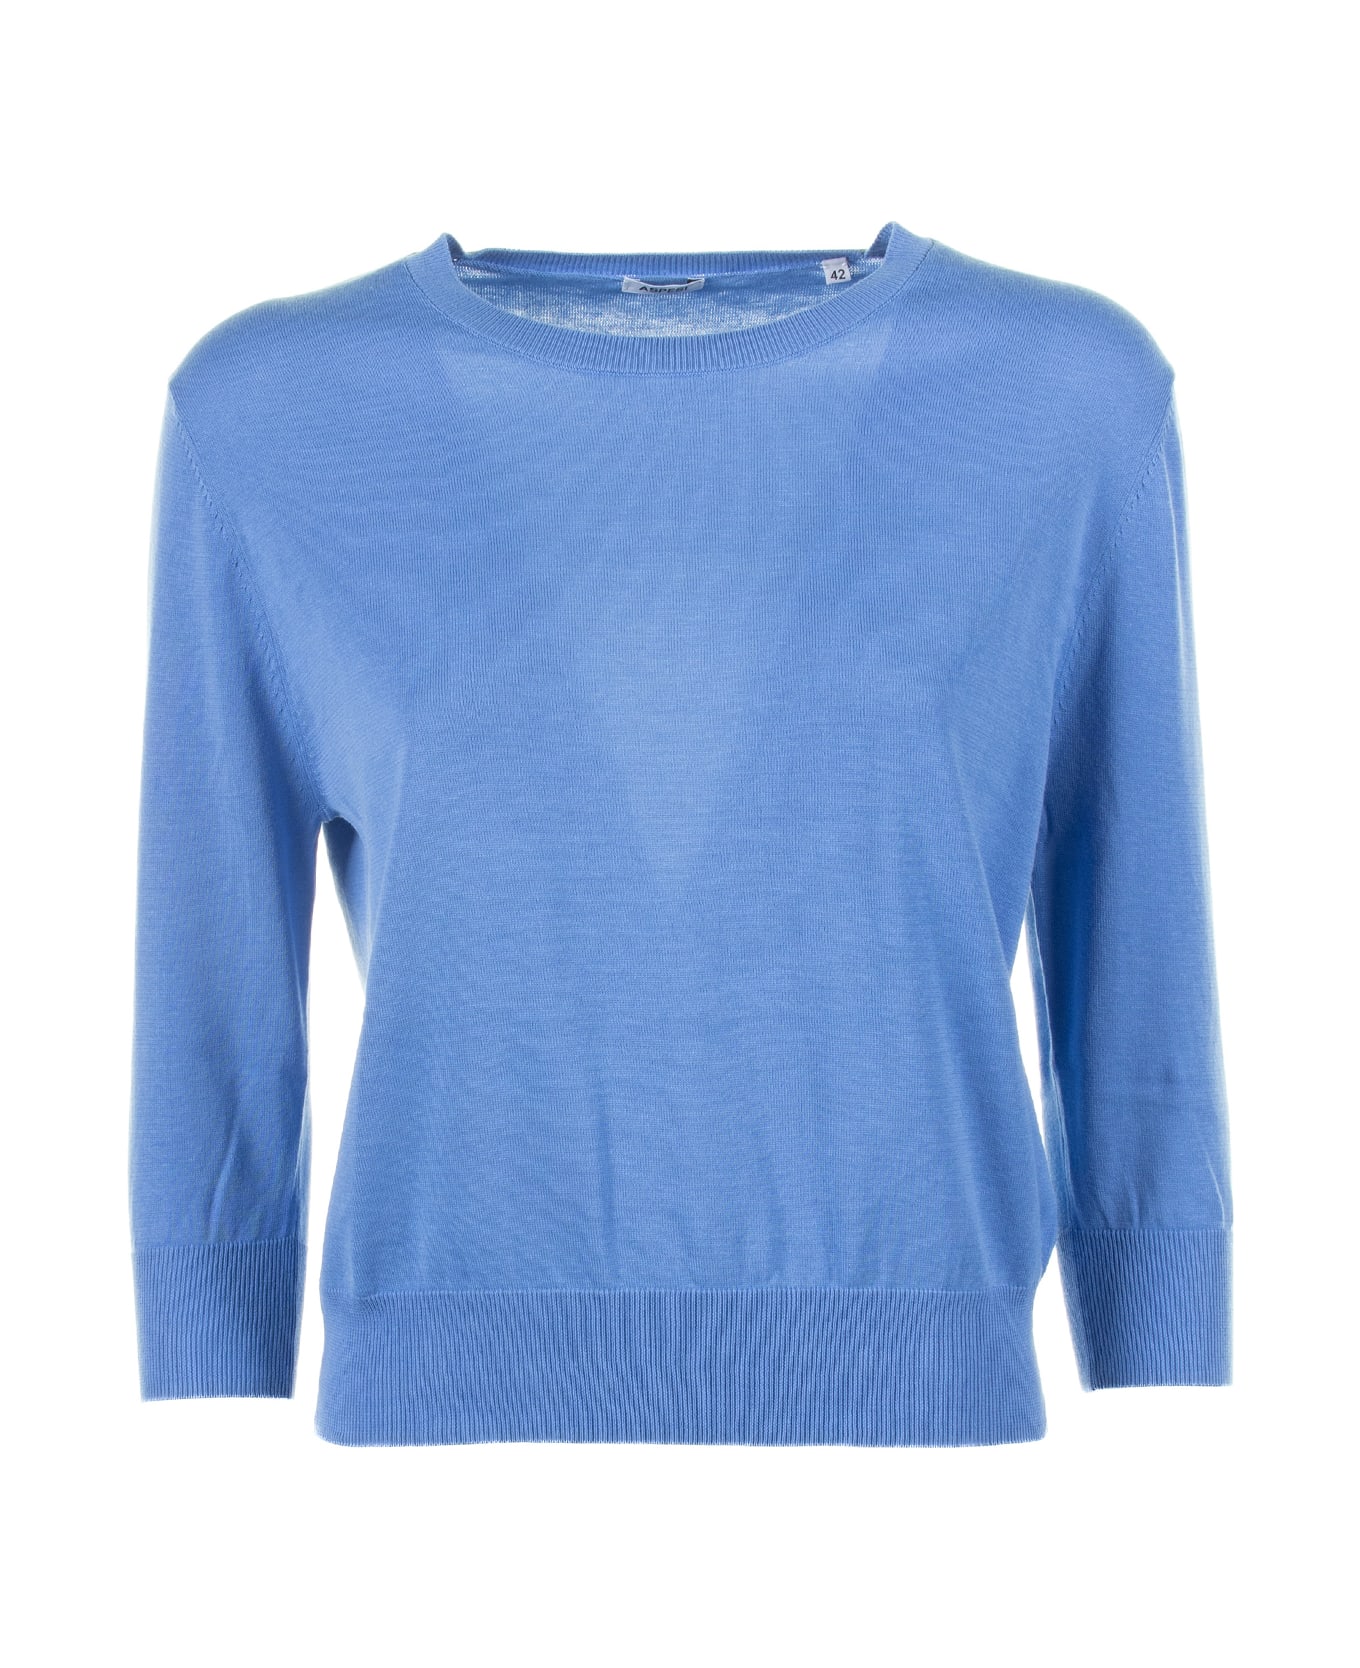 Aspesi Light Blue Shirt With 3/4 Sleeves - LAVANDA ニットウェア